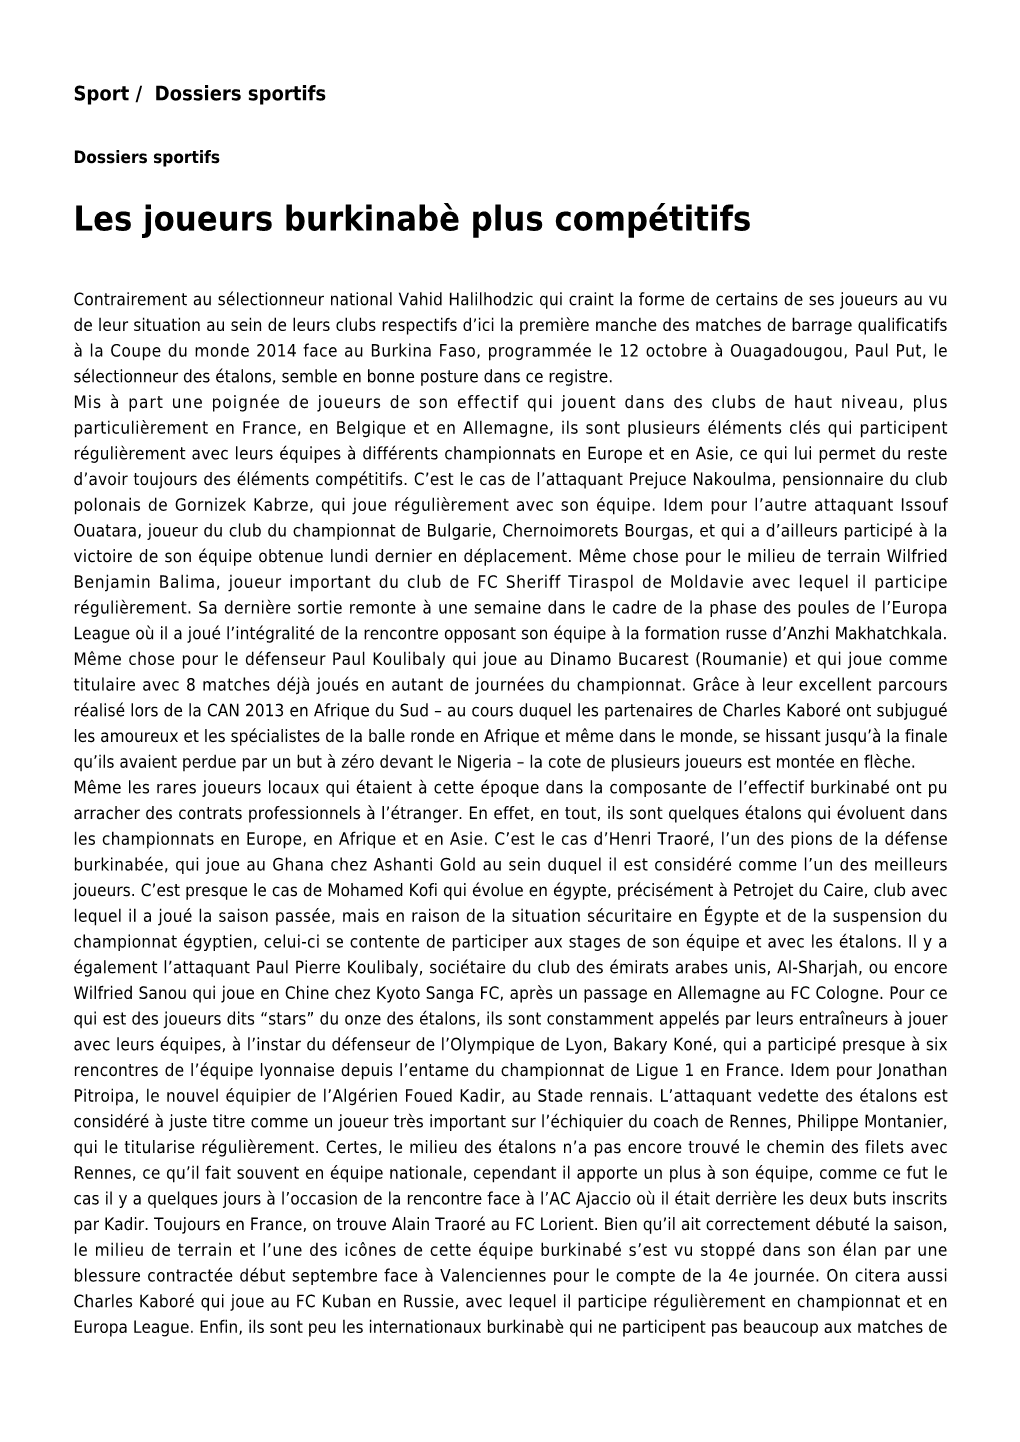 Les Joueurs Burkinabè Plus Compétitifs